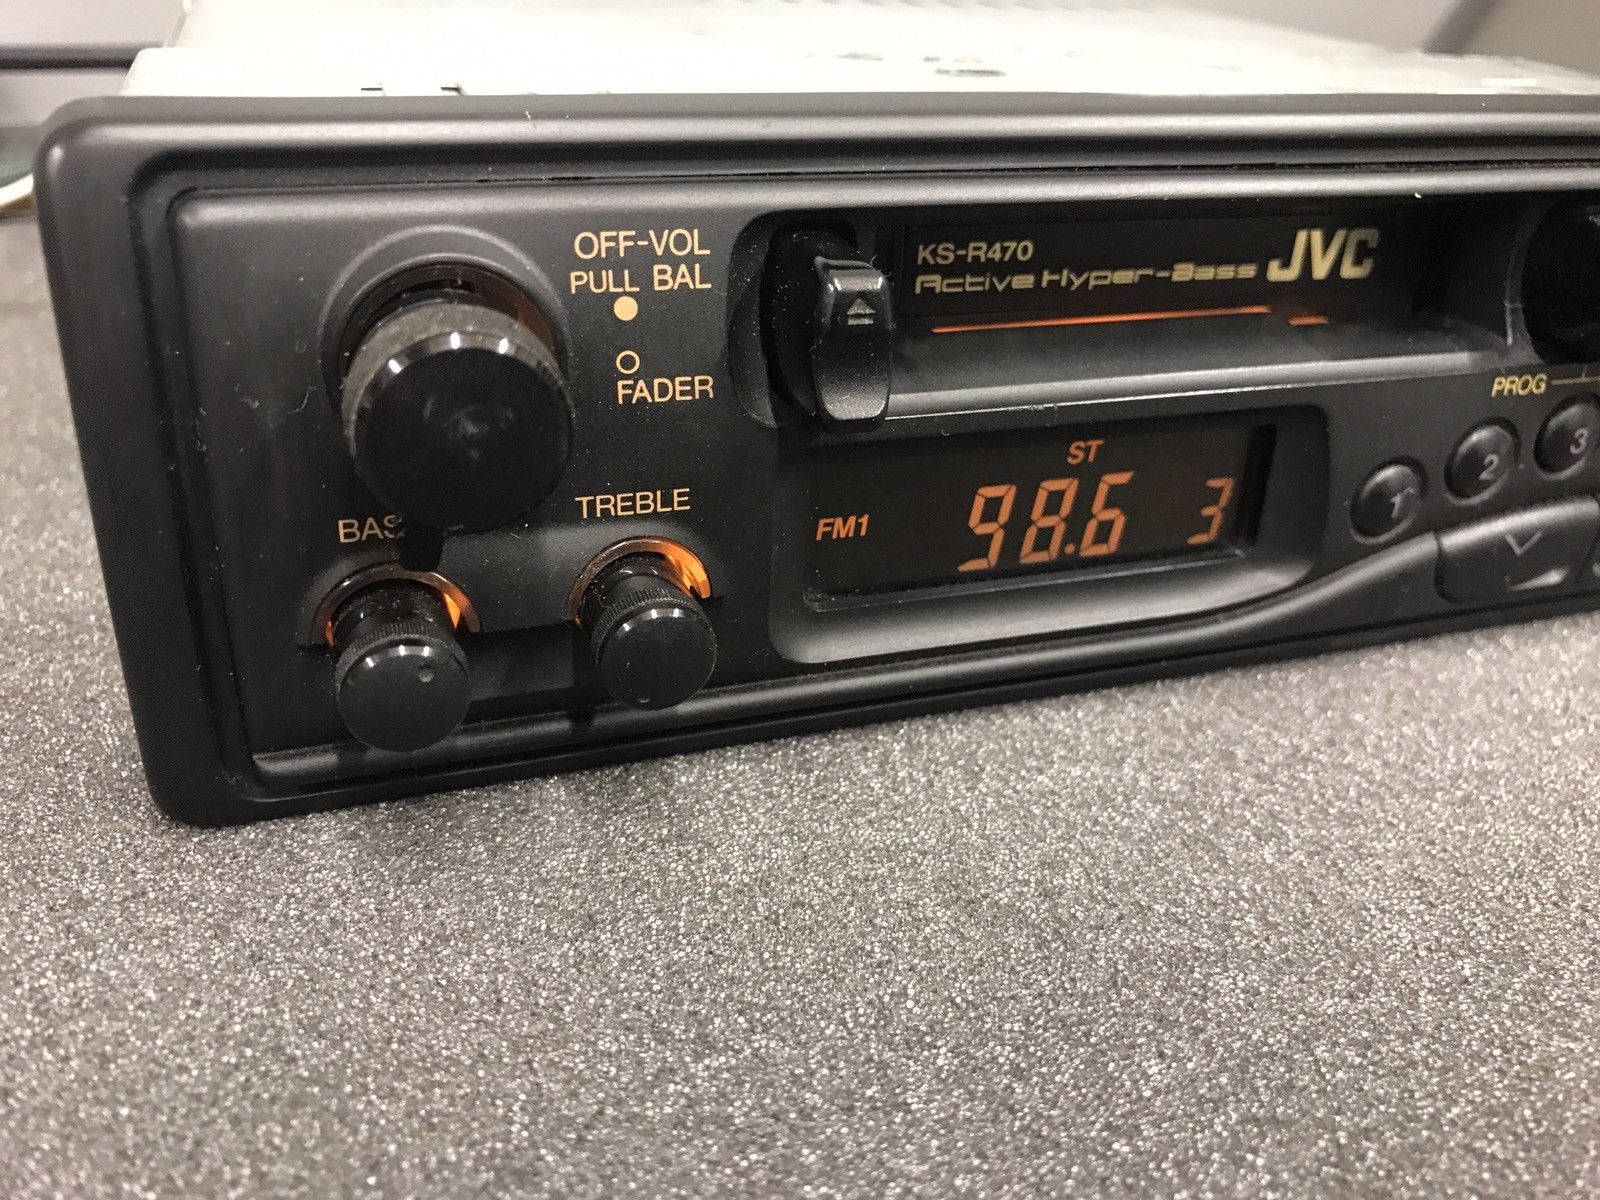 Old Classic Boxed Jvc Car Radio Cassette Player Model Ks-R470 Hyper-Bass Model